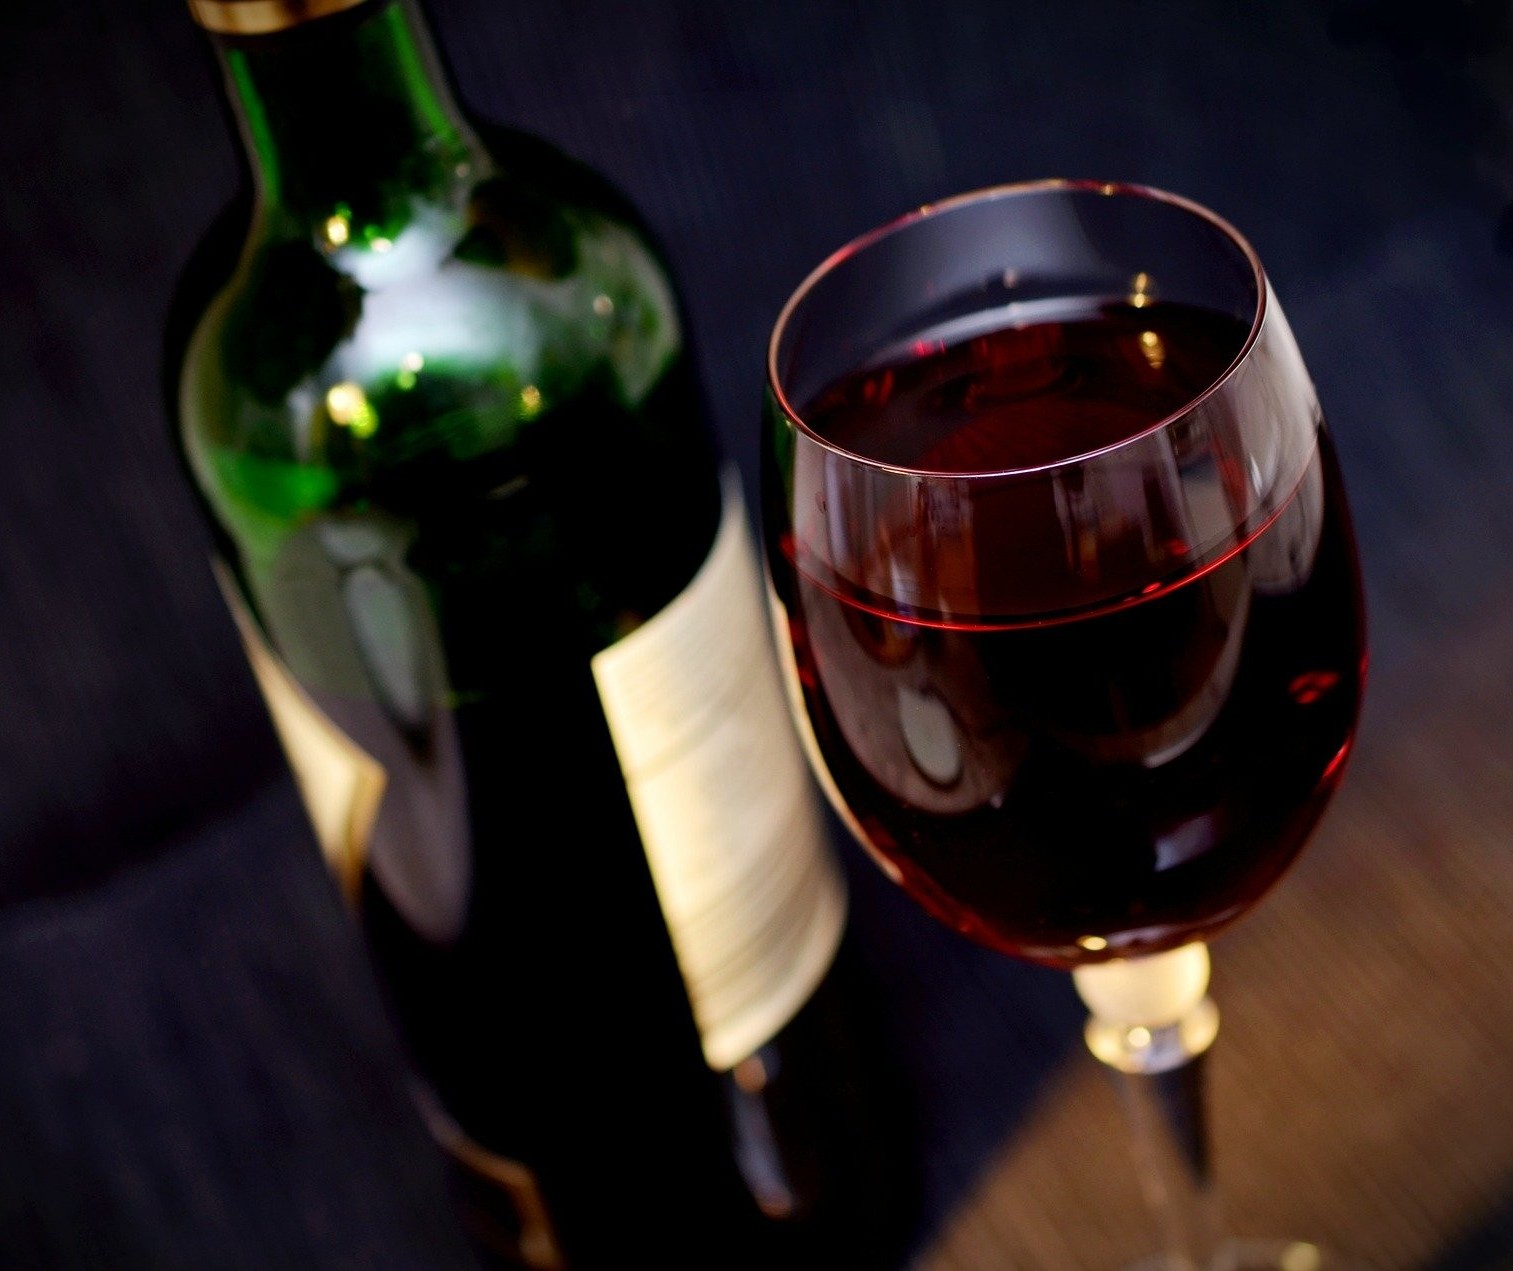 Como ler corretamente o rótulo de um vinho?